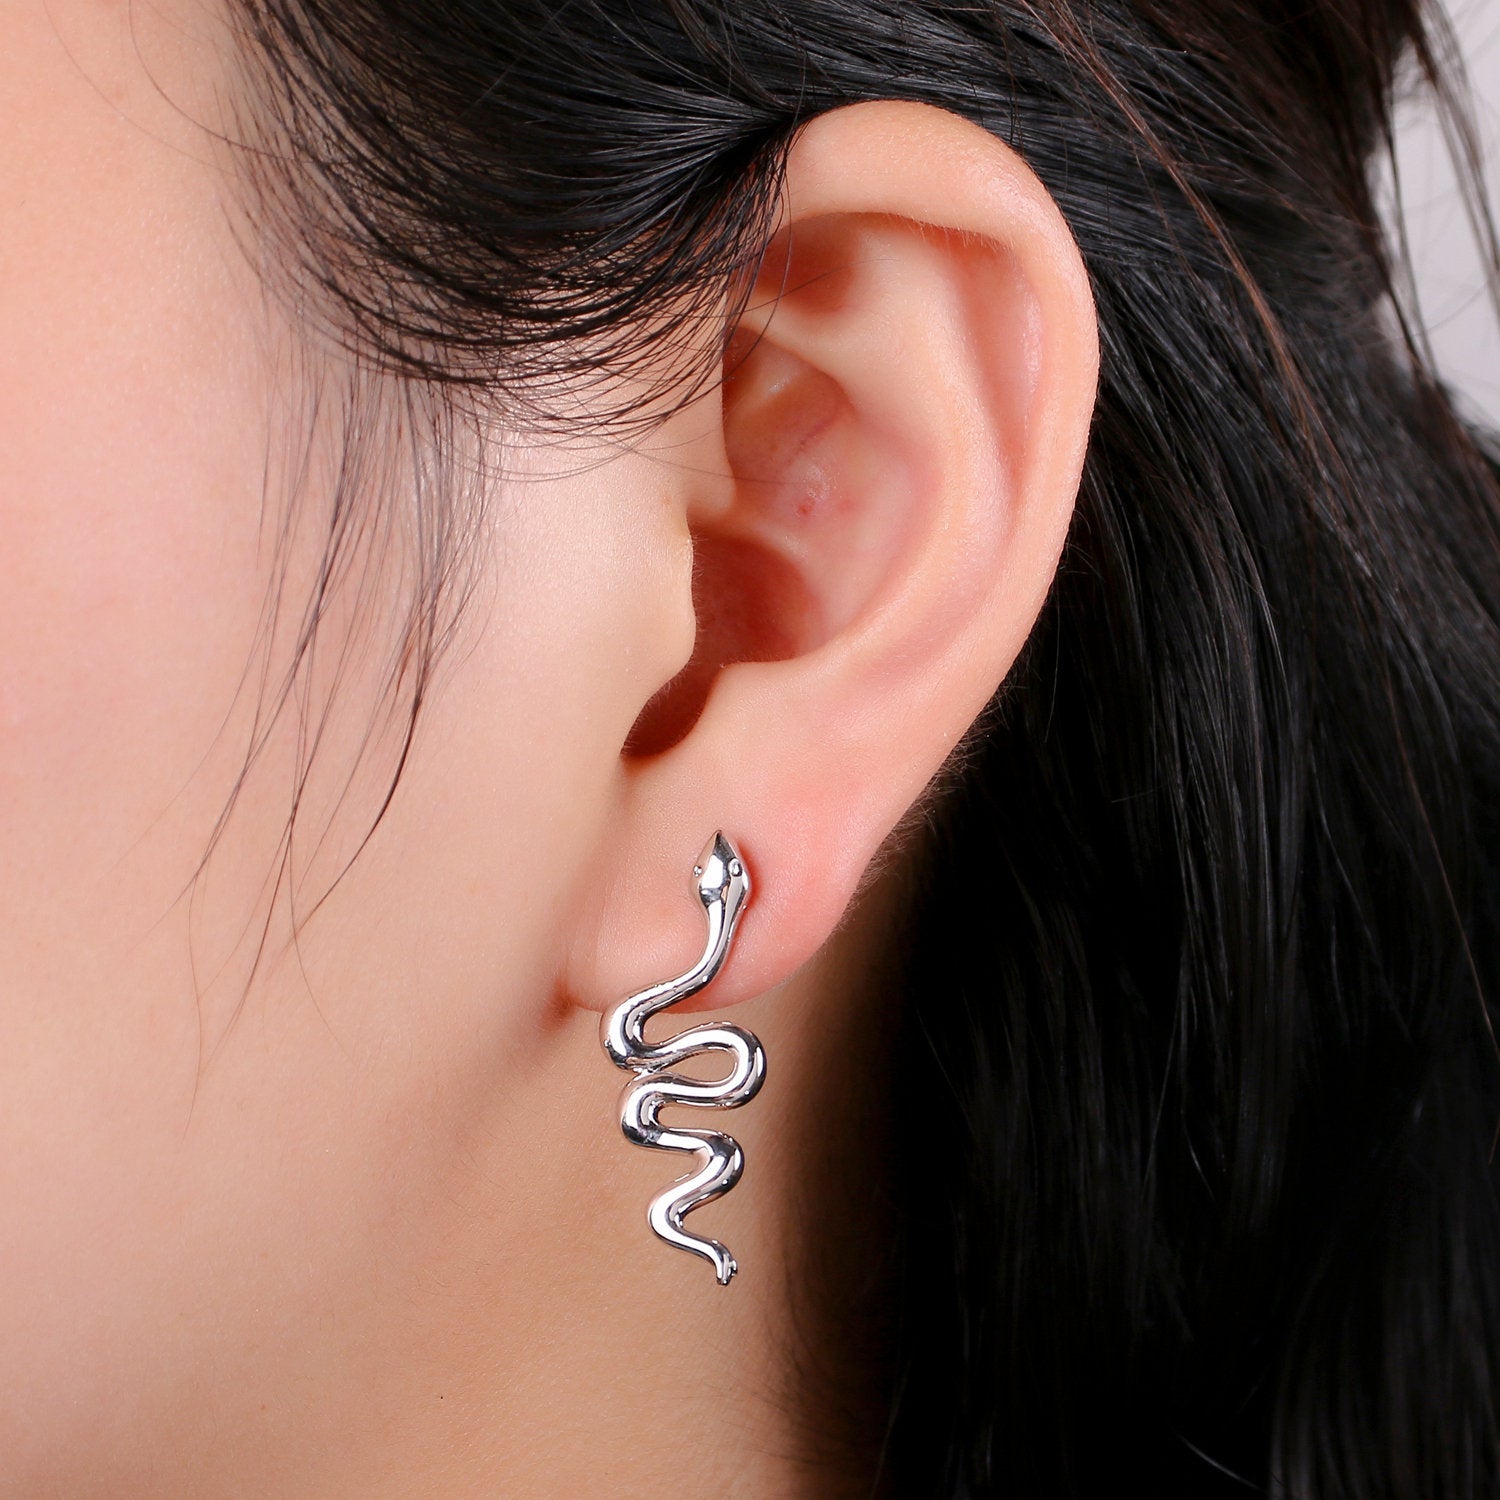 1 pair Silver Snake earrings, snake stud earrings, dainty earrings, Serpent earrings, delicate studs, Silver earrings, minimalist earring - DLUXCA